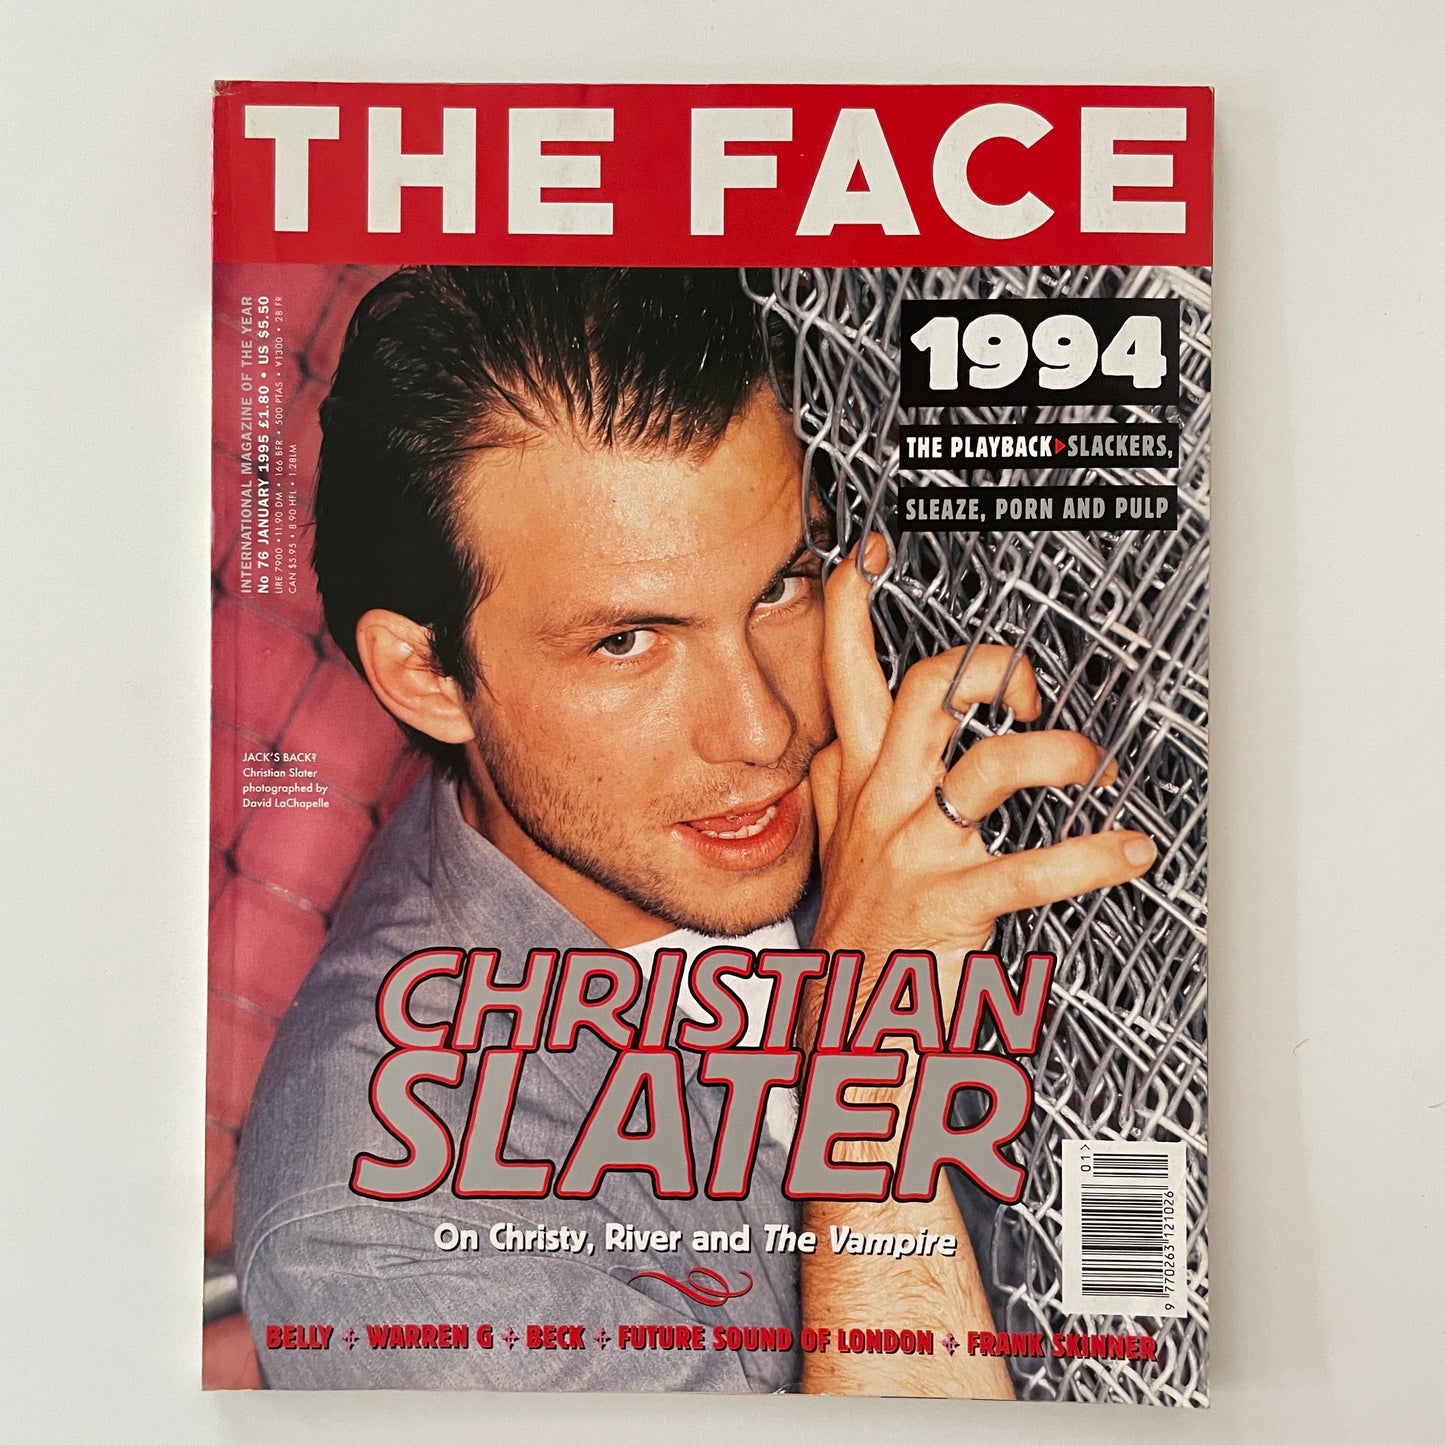 The Face No.76 - January 1995